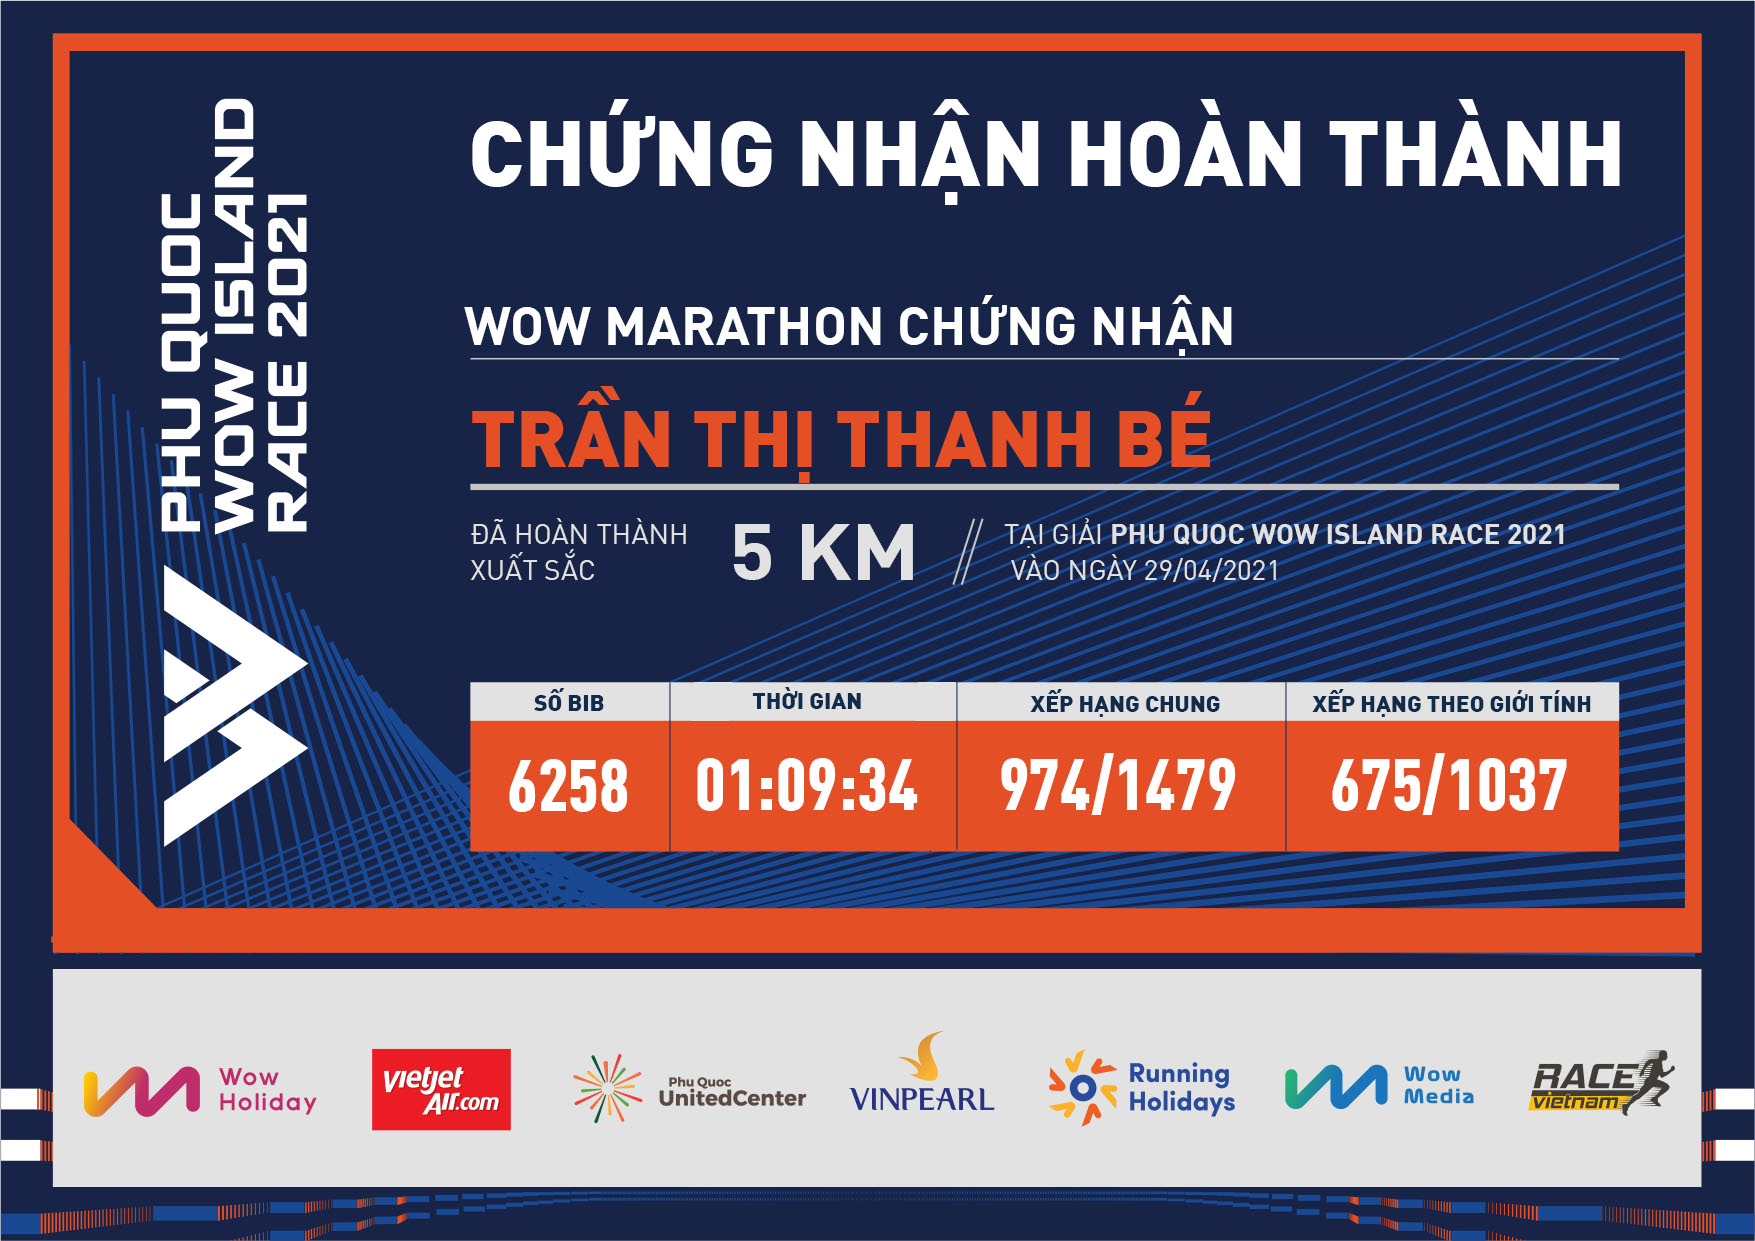 6258 - Trần Thị Thanh Bé